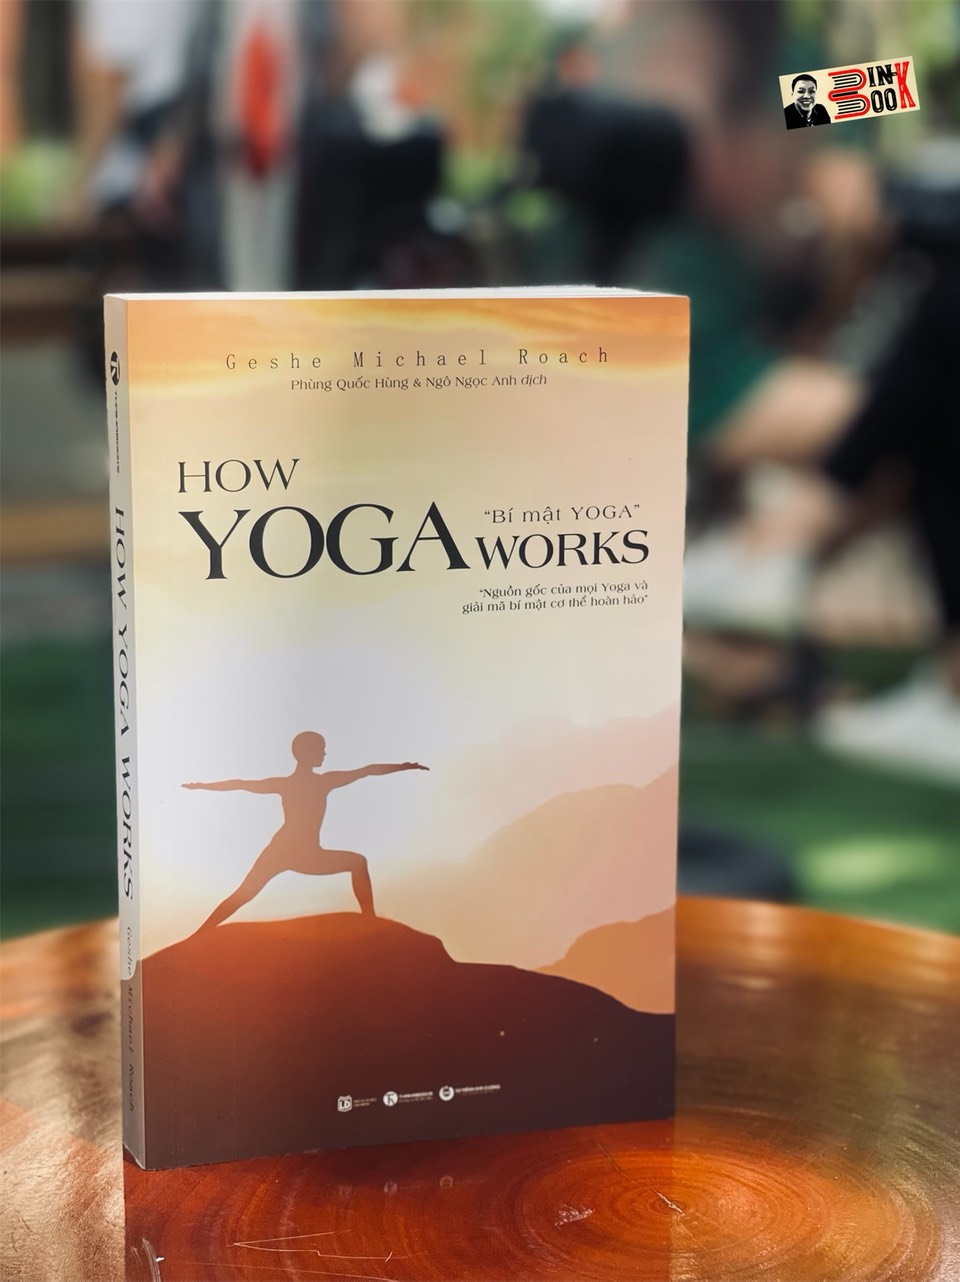 HOW YOGA WORKS: BÍ MẬT YOGA - Nguồn gốc của Yoga và giải mã bí mật cơ thể hoàn hảo - Geshe Michael Roach – THAIHABOOKS (bìa mềm)